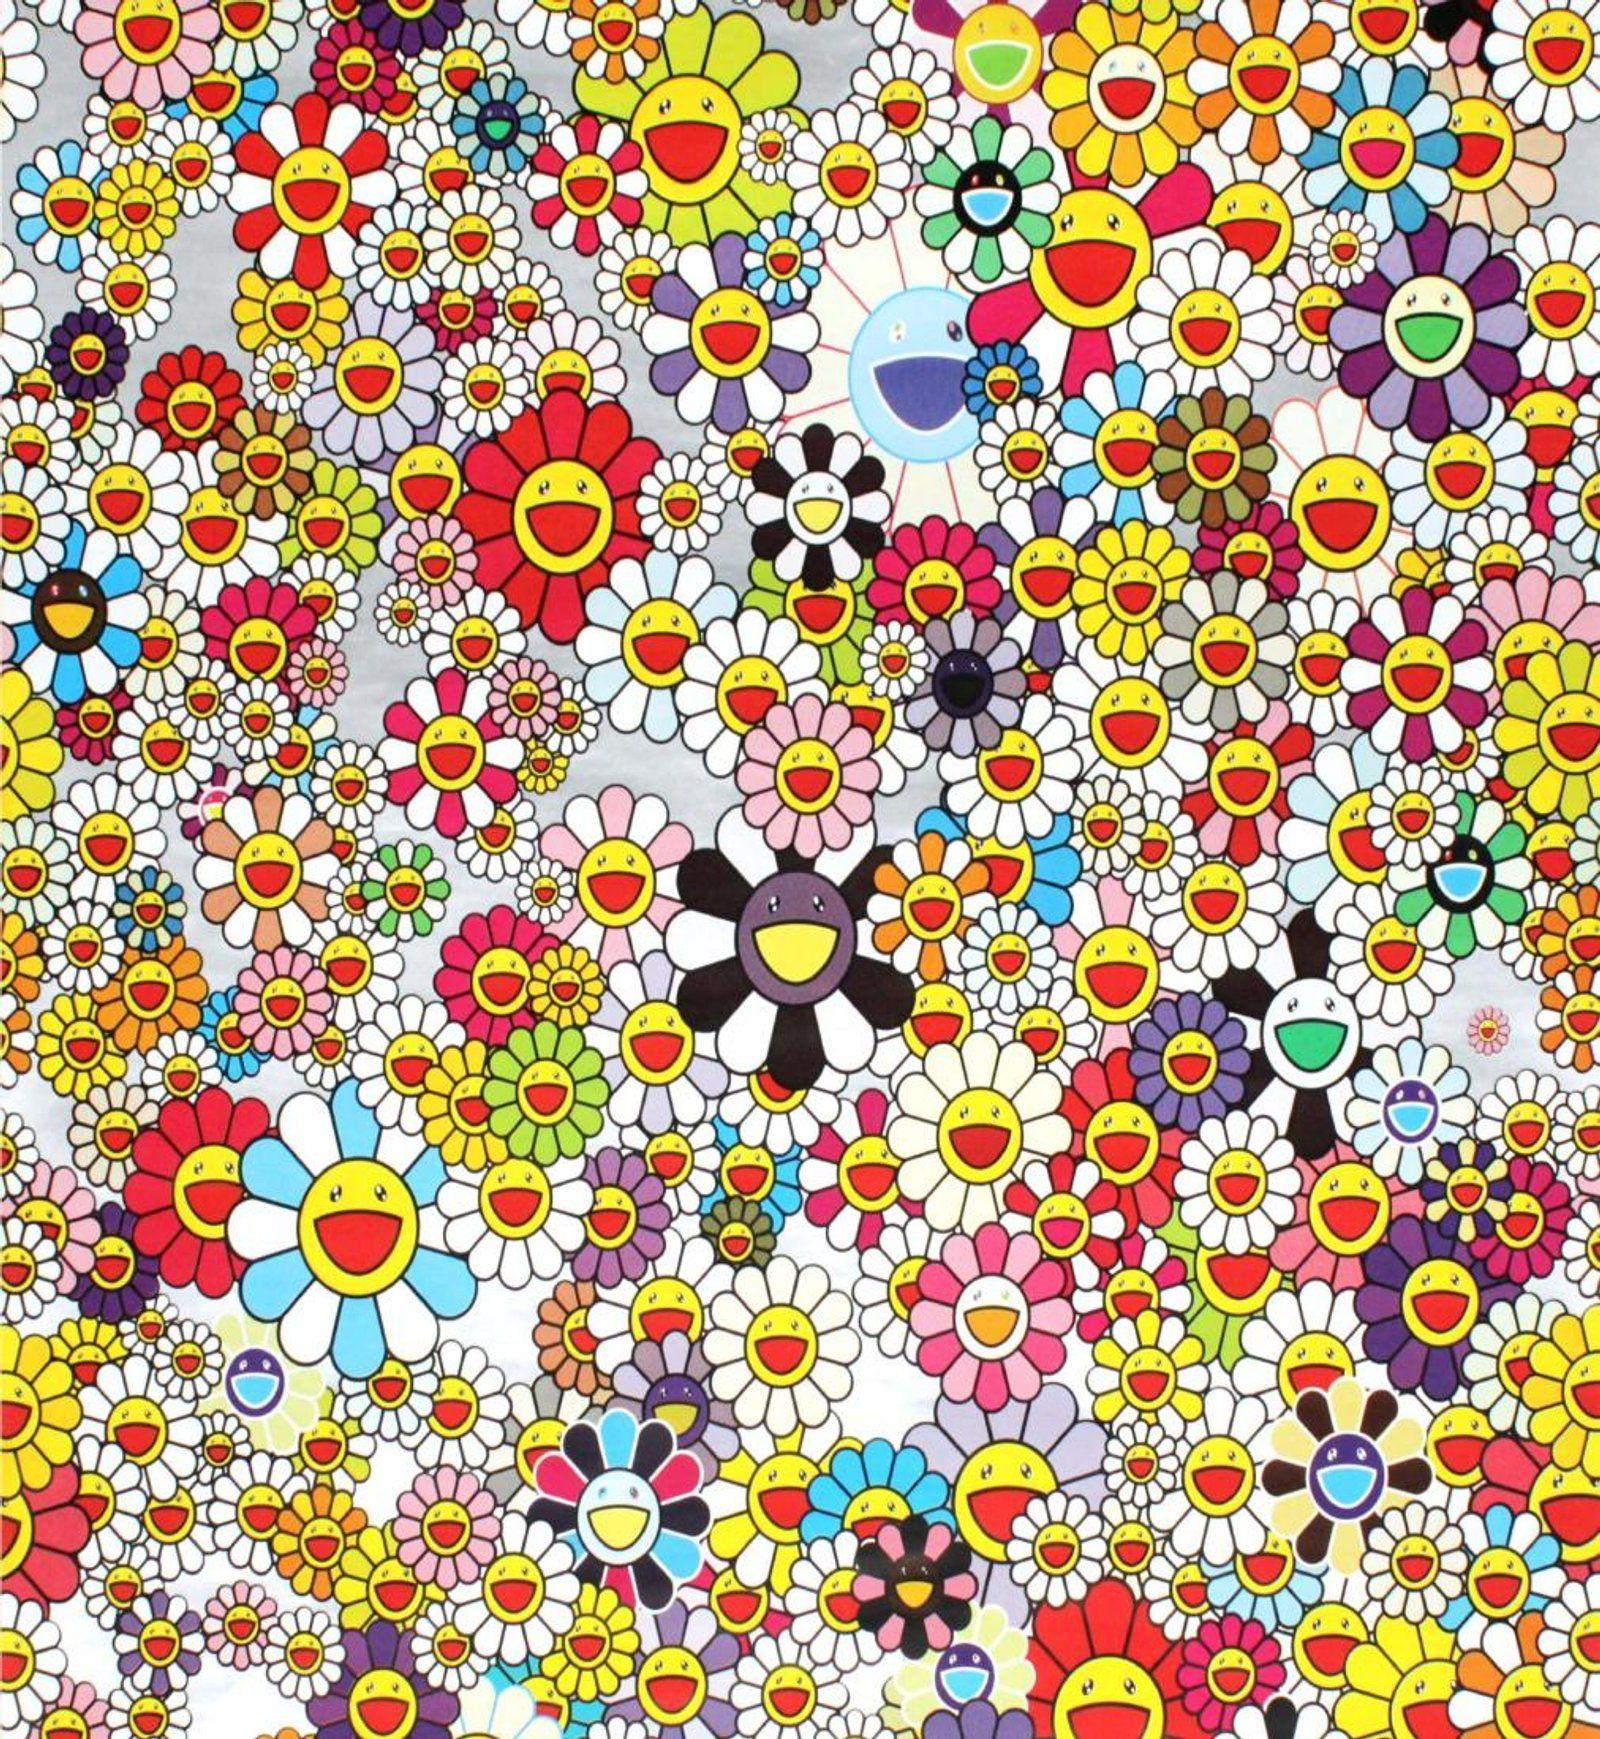 Takashi Murakami Flower Wallpapers